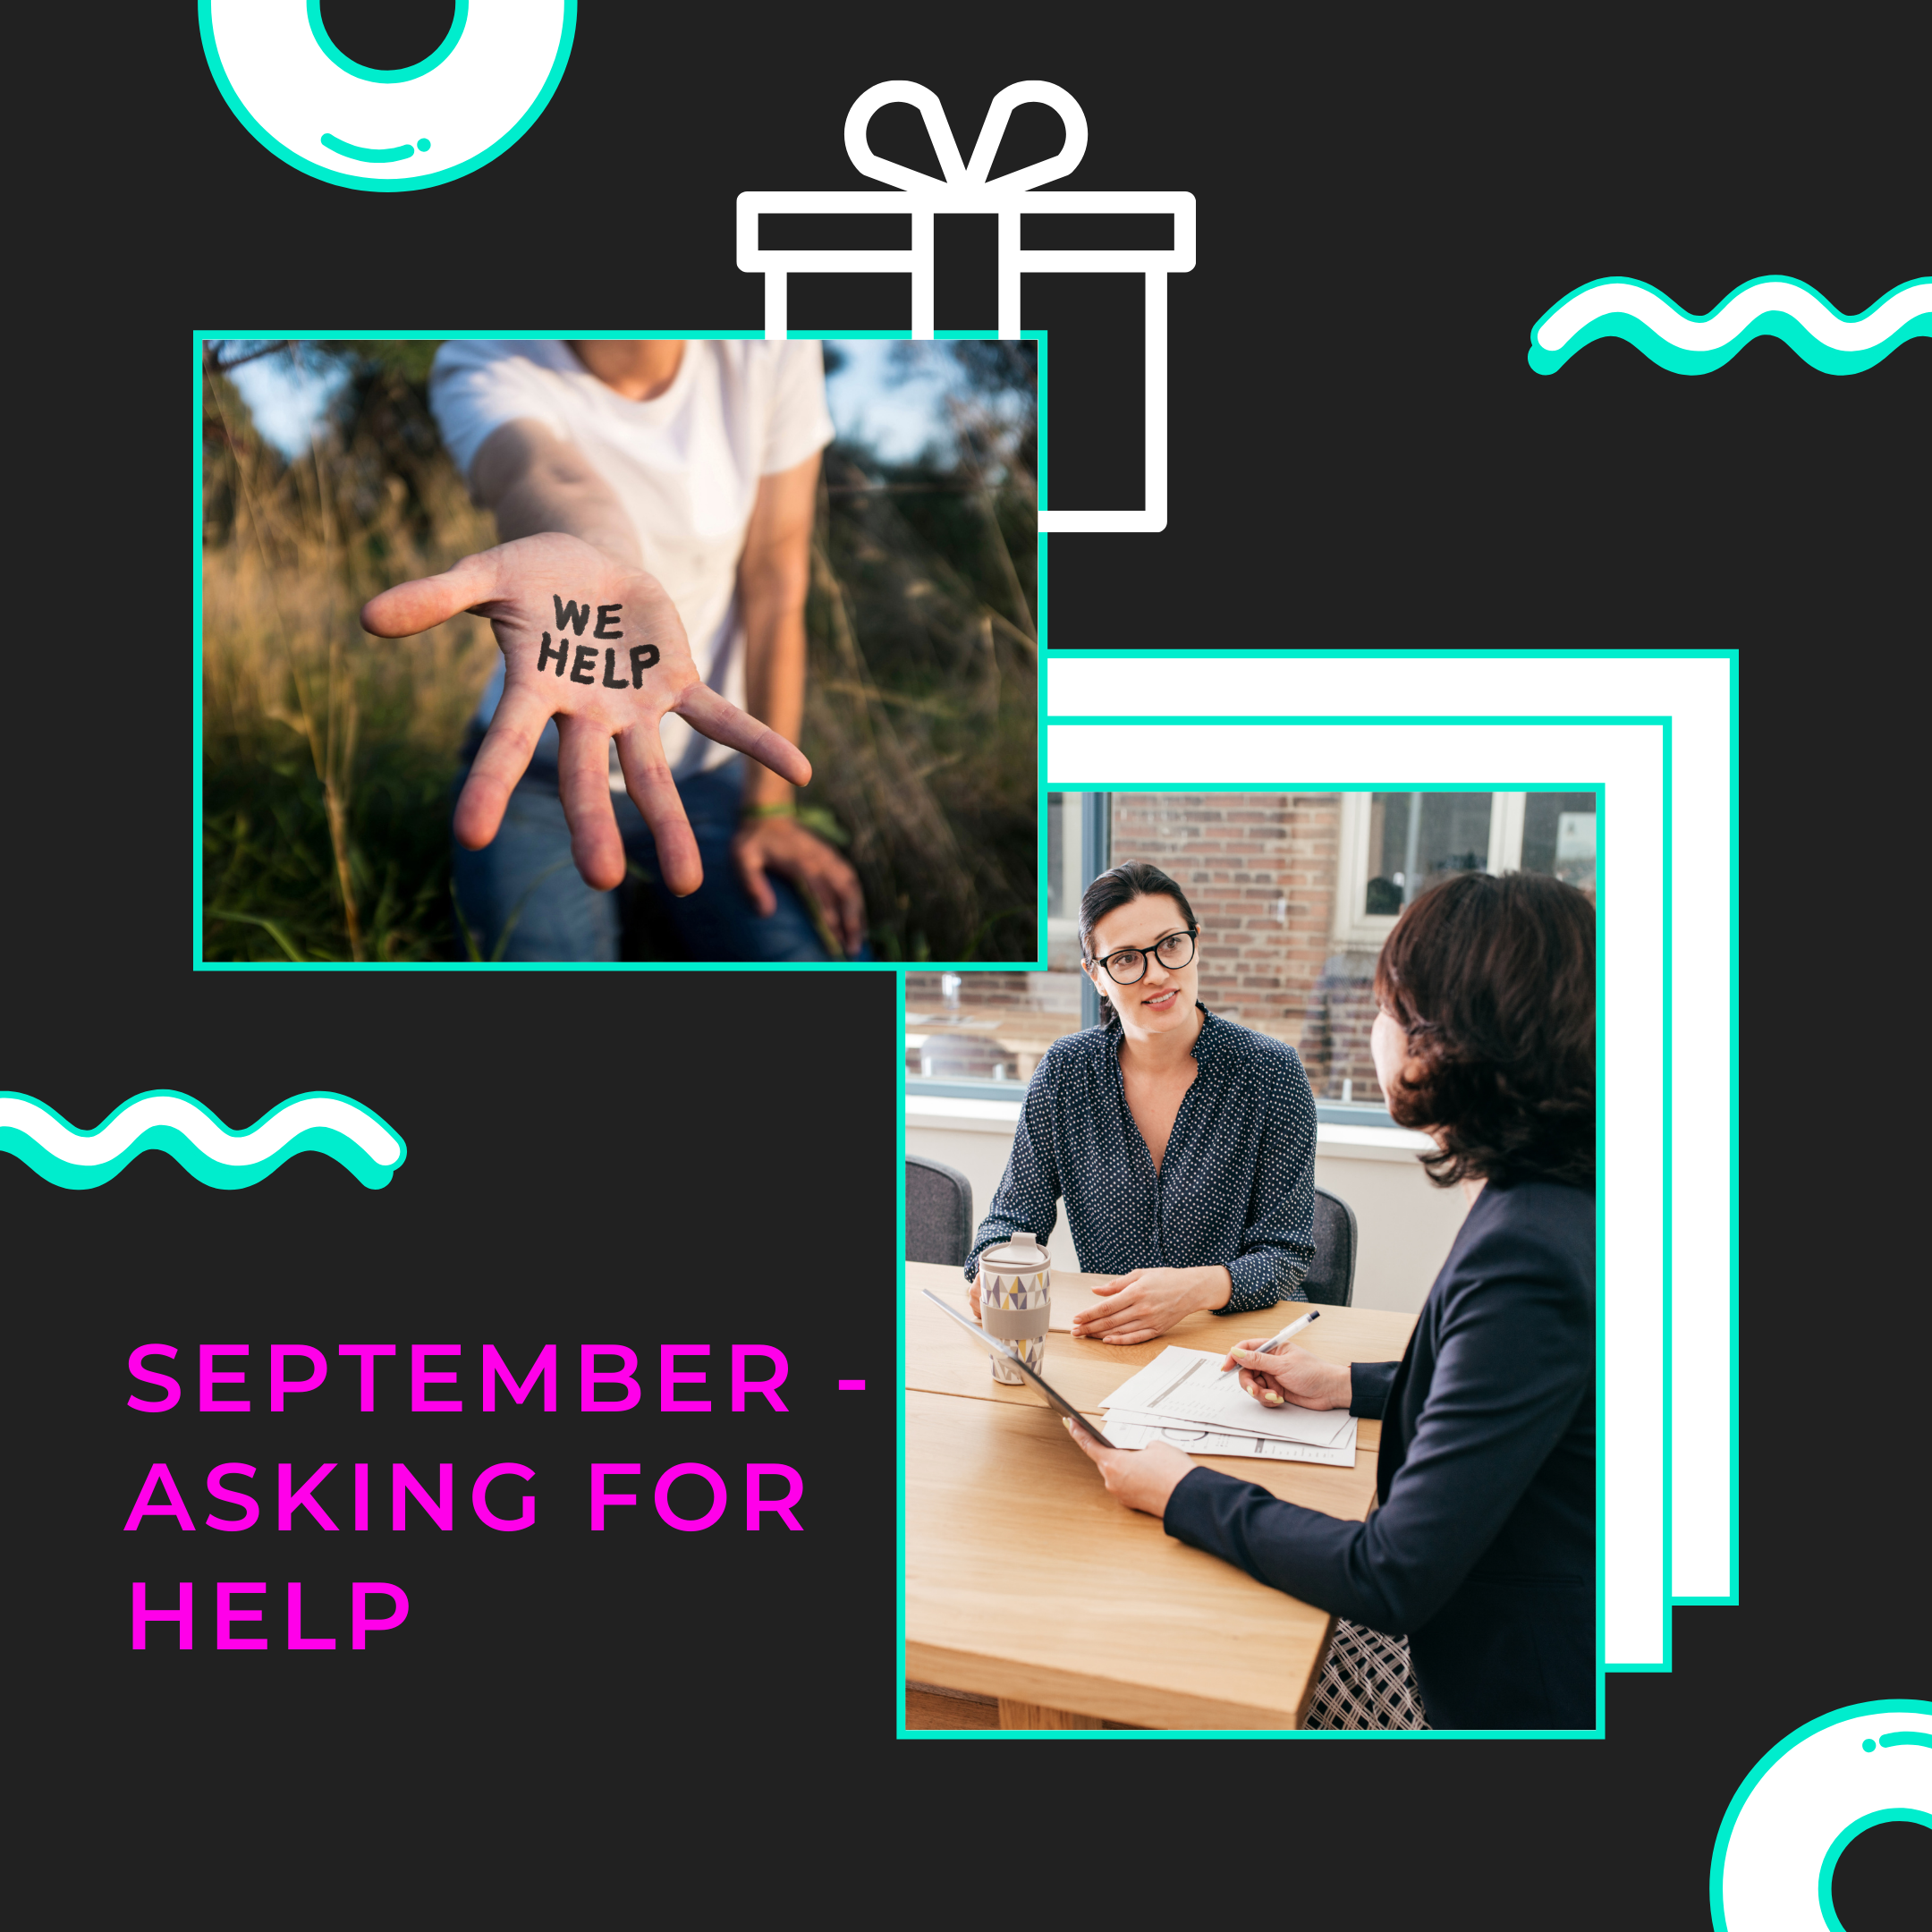 Asking for help in September